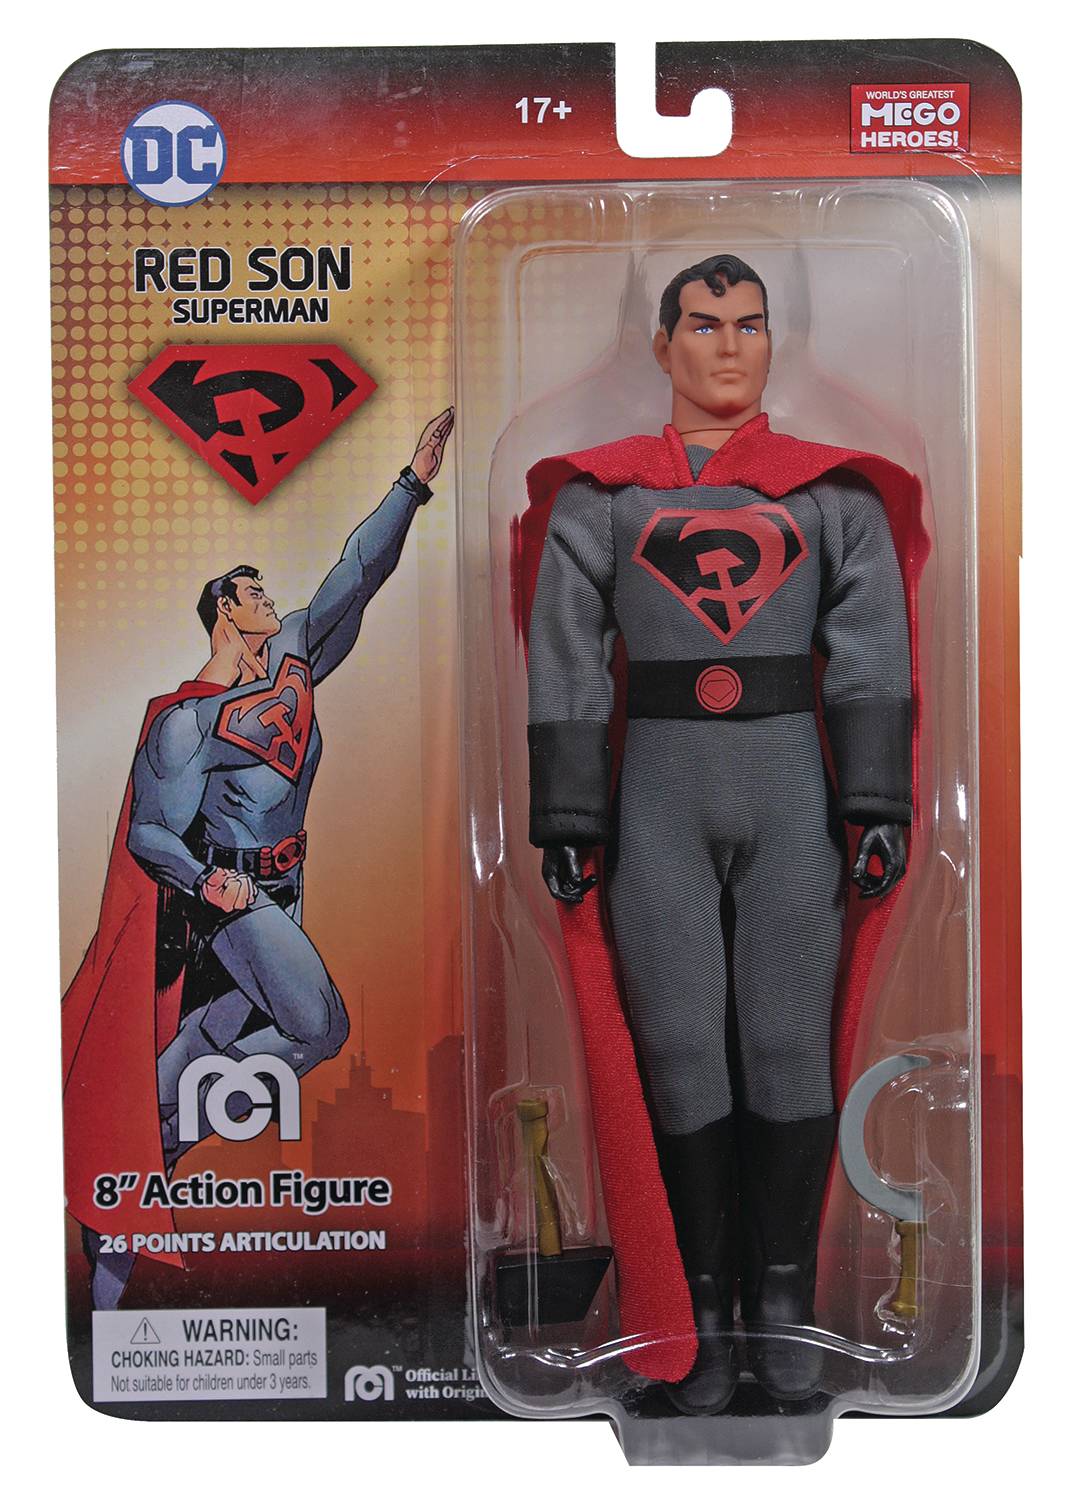 MEGO DC HEROES RED SON SUPERMAN PX 8IN AF